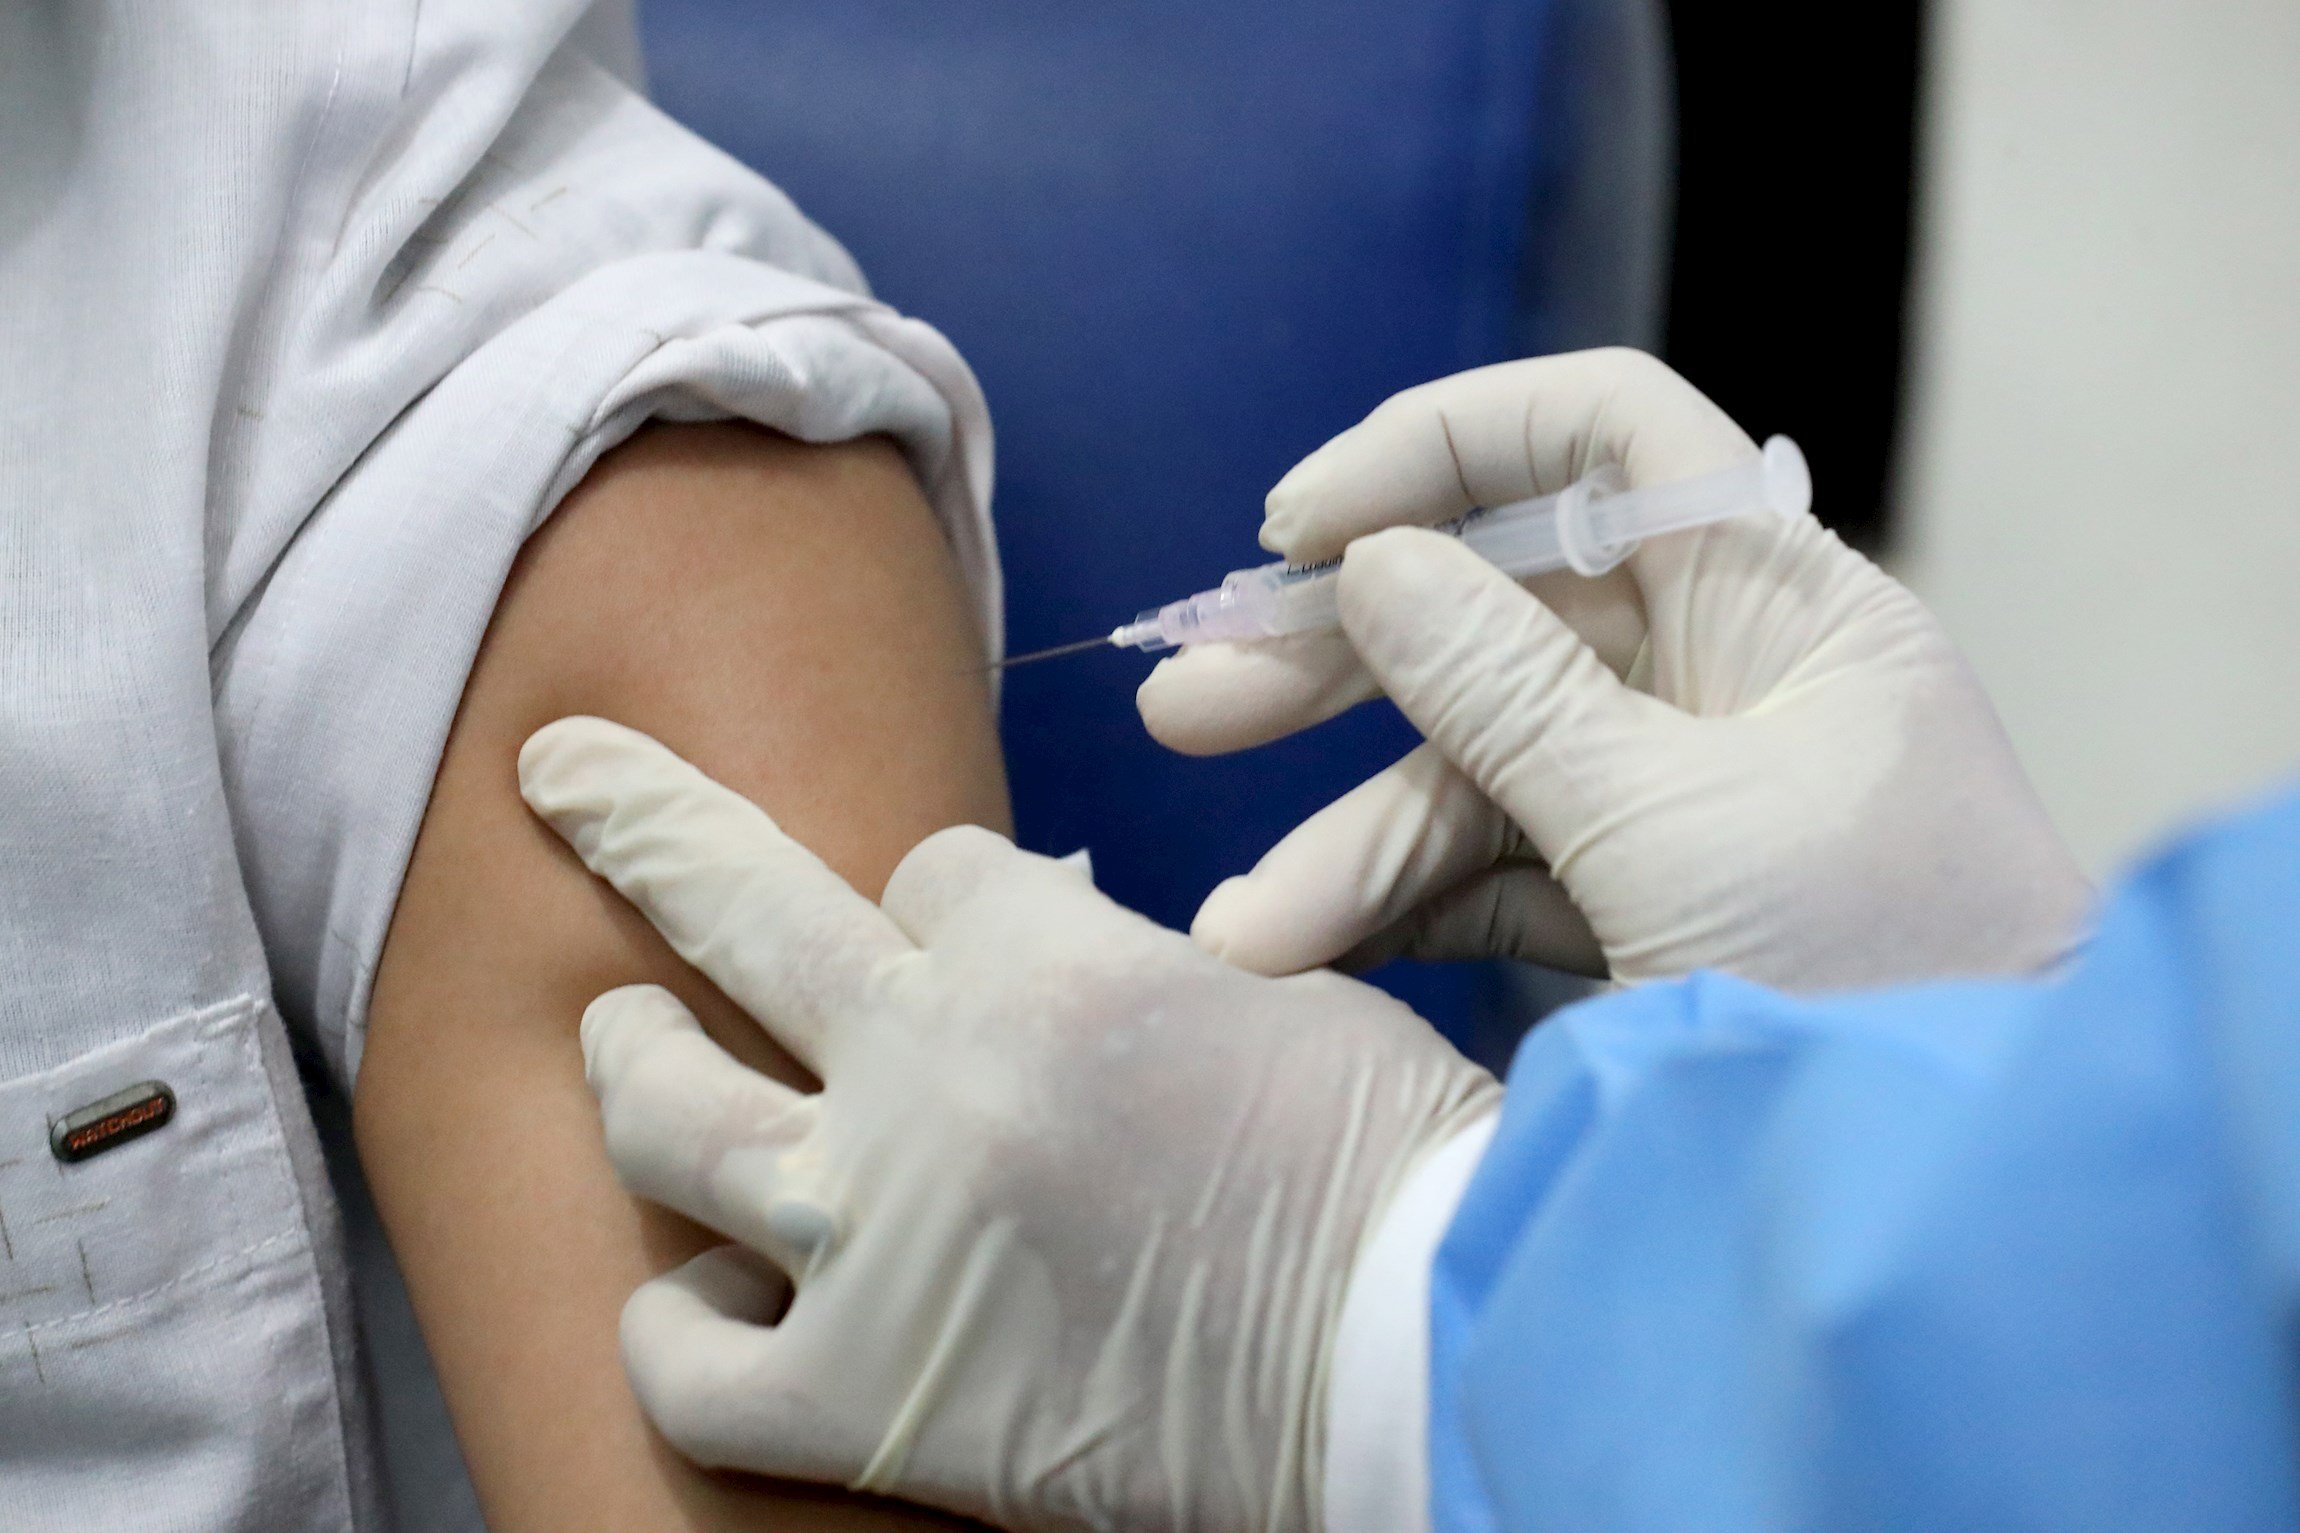 Els EUA ja tenen data per començar a vacunar contra la Covid: l'11 de desembre